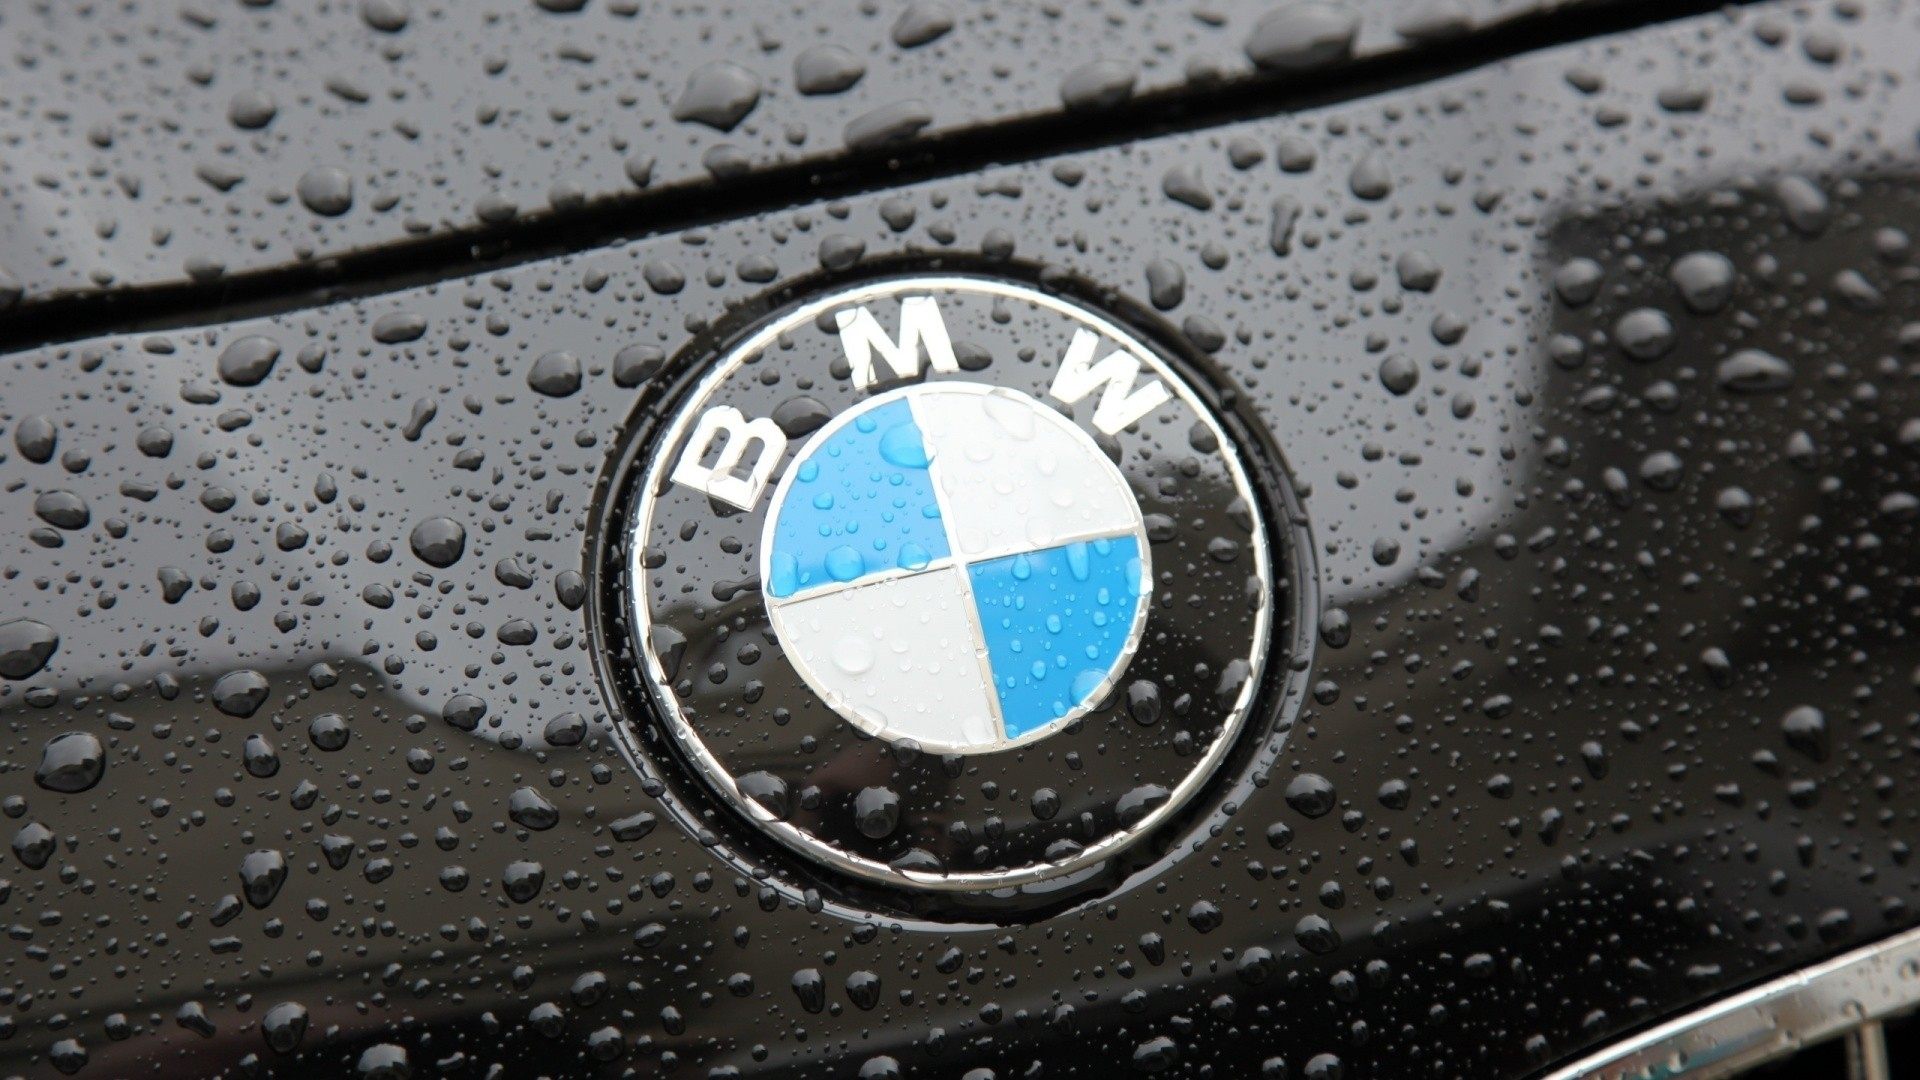 No, el logo de BMW no es una hélice de avión